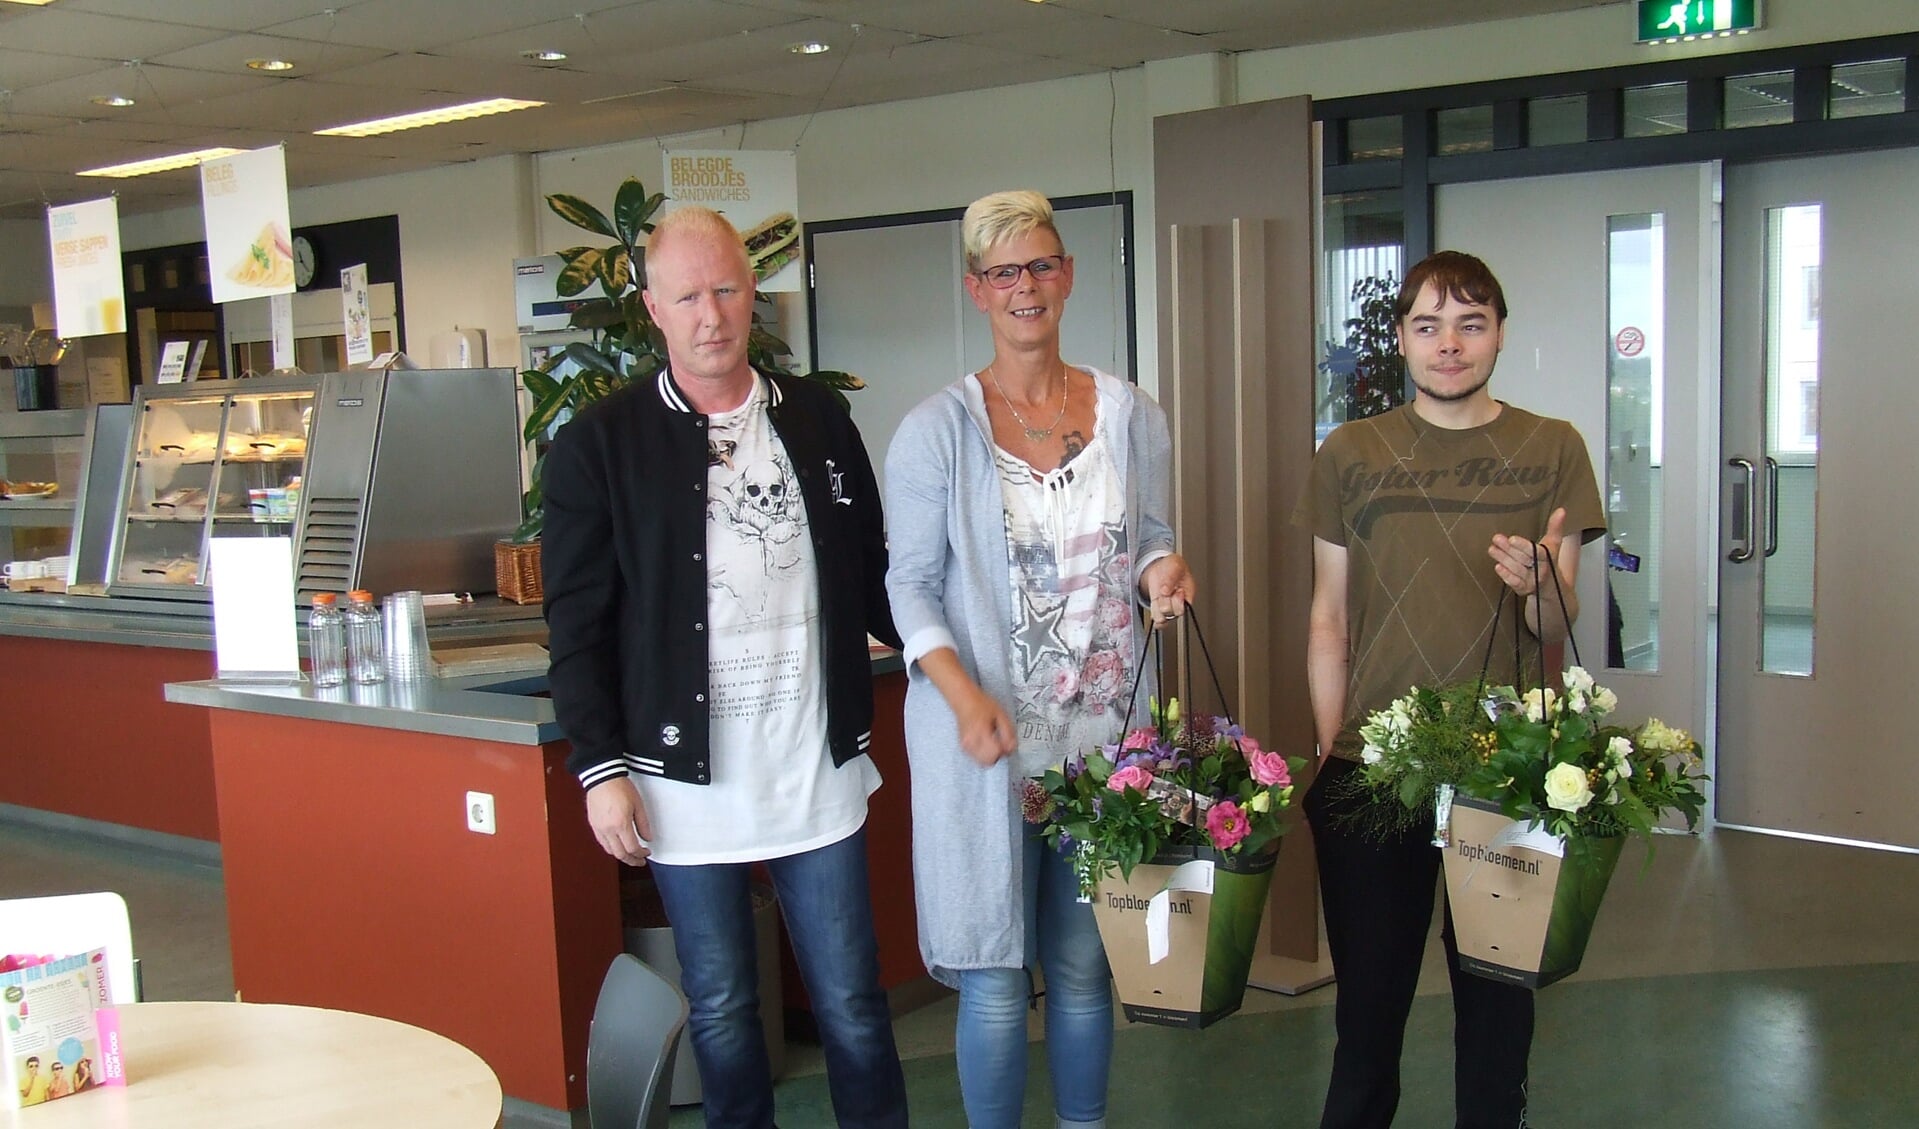 V.l.n.r. Paul, Annelies en Roy kregen een bloemetje voor hun kordate optreden. (Foto: EvE)